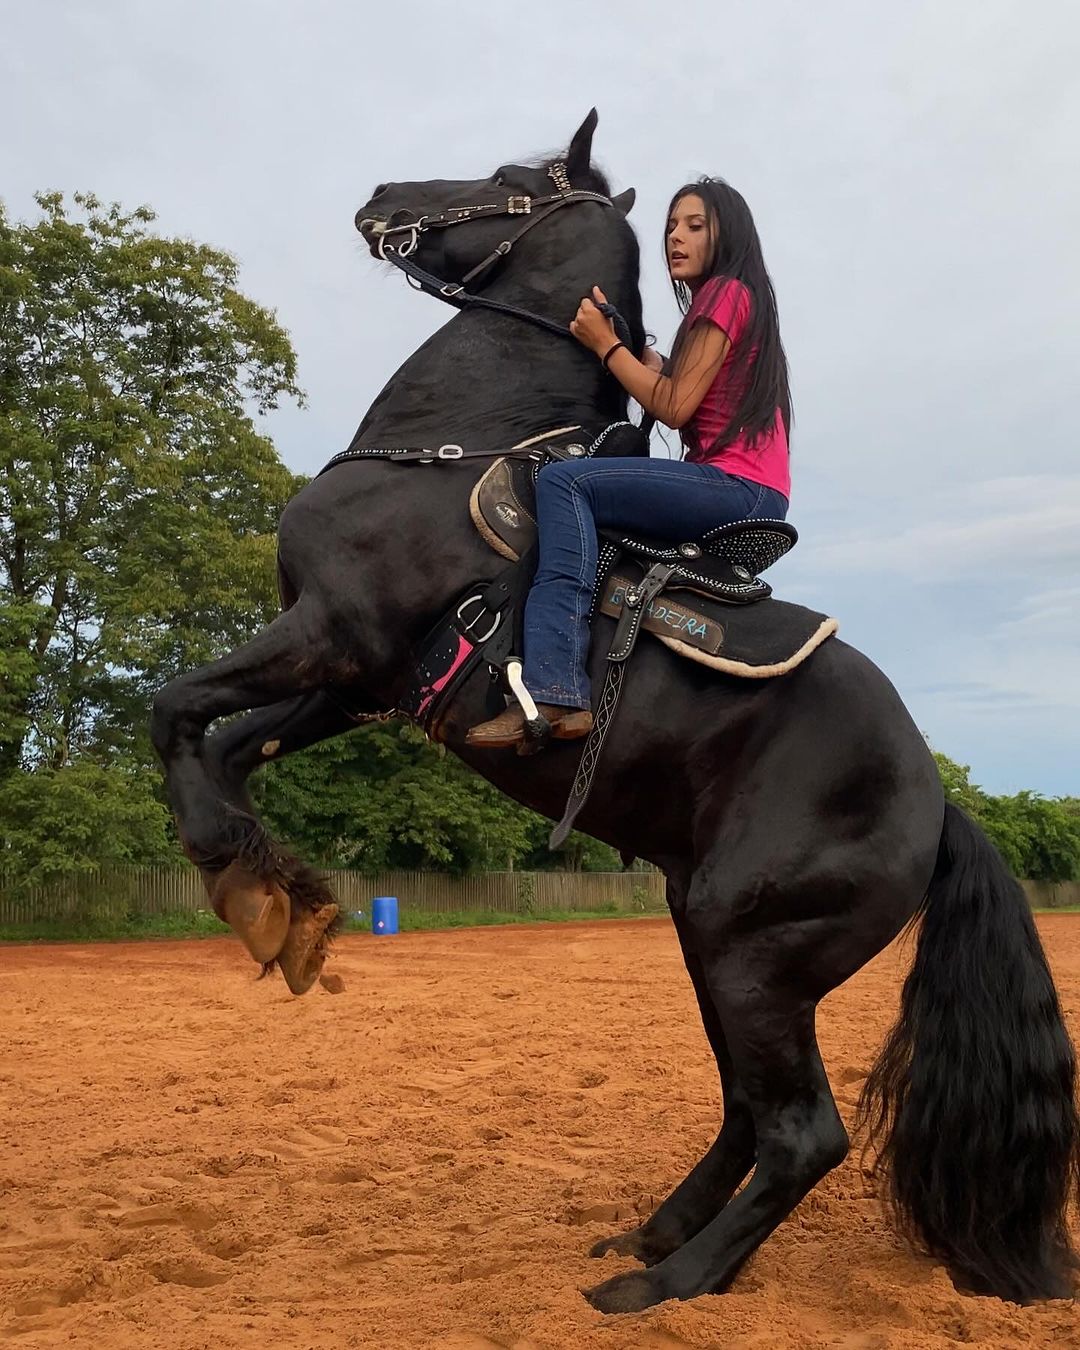 Ana Castela demonstra habilidades com cavalo e é chamada de ‘encantadora de cavalos’